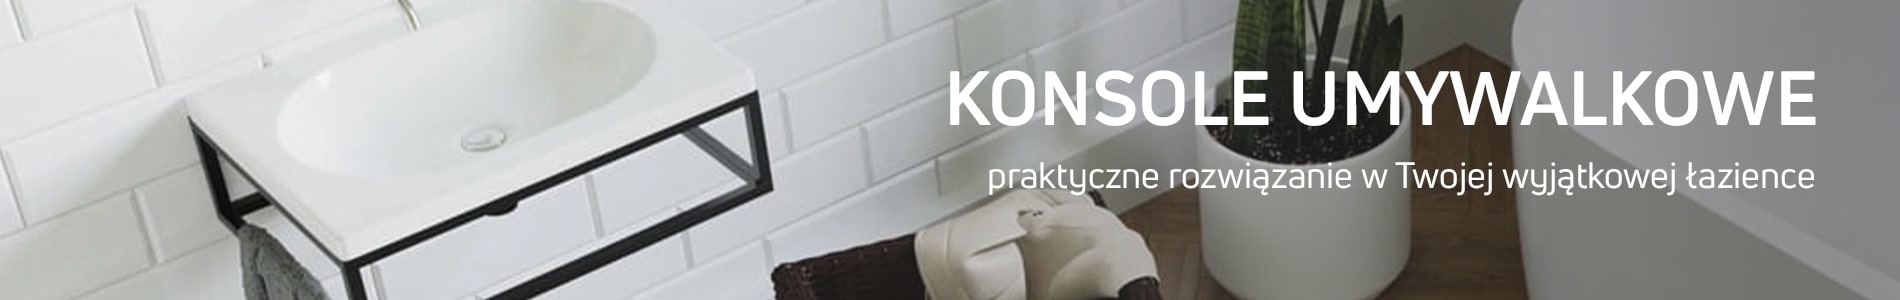 Konsole umywalkowe w sklepie Massi.pl